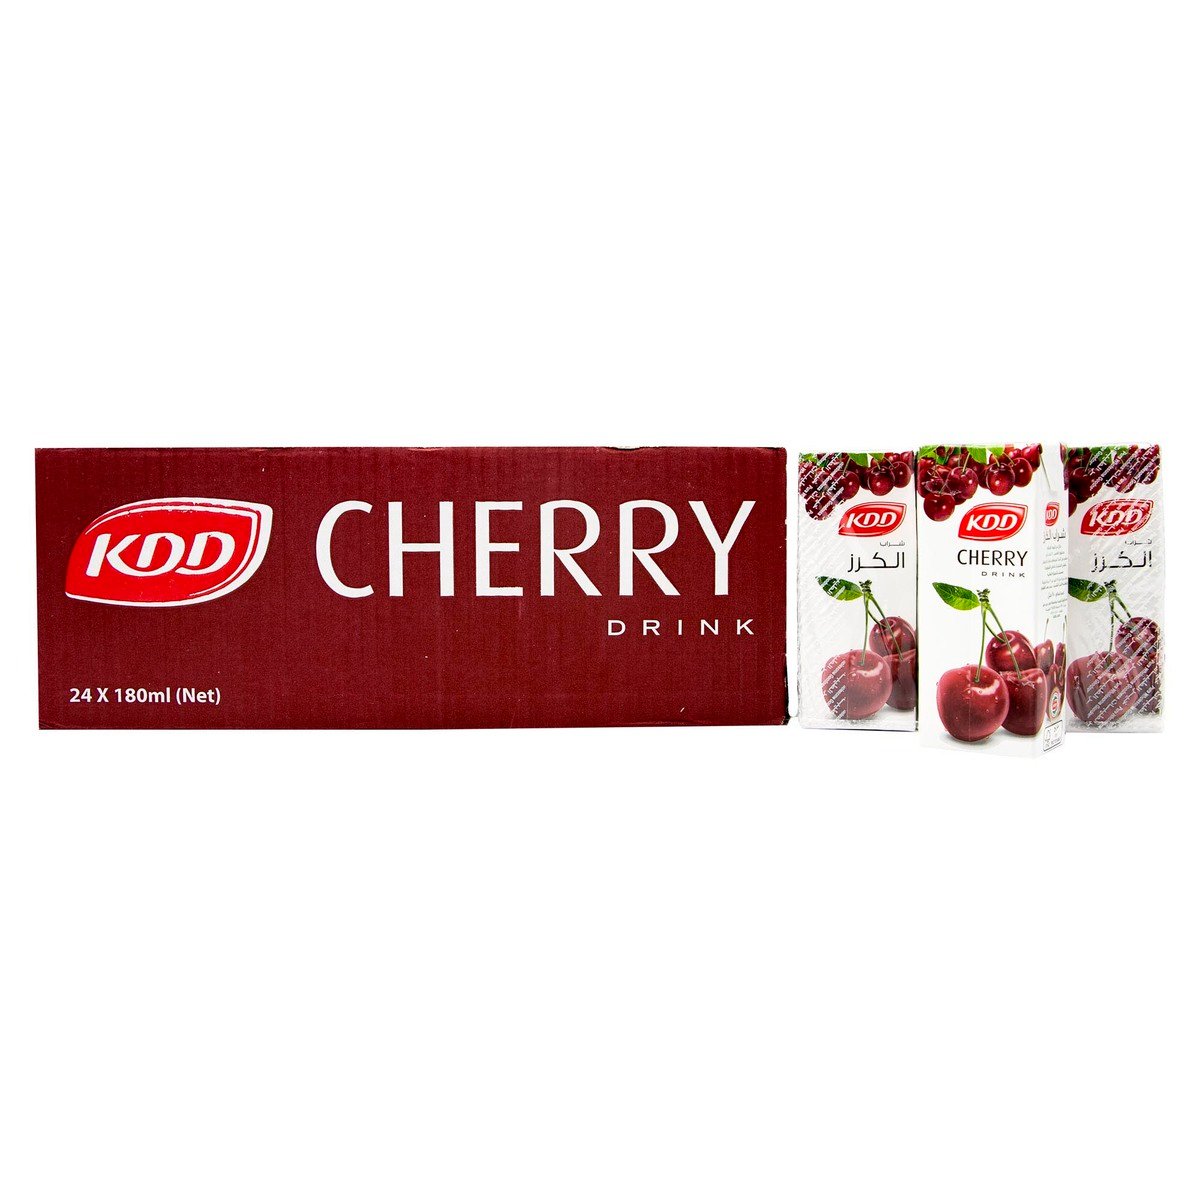 KDD Cherry Drink 6 x 180ml